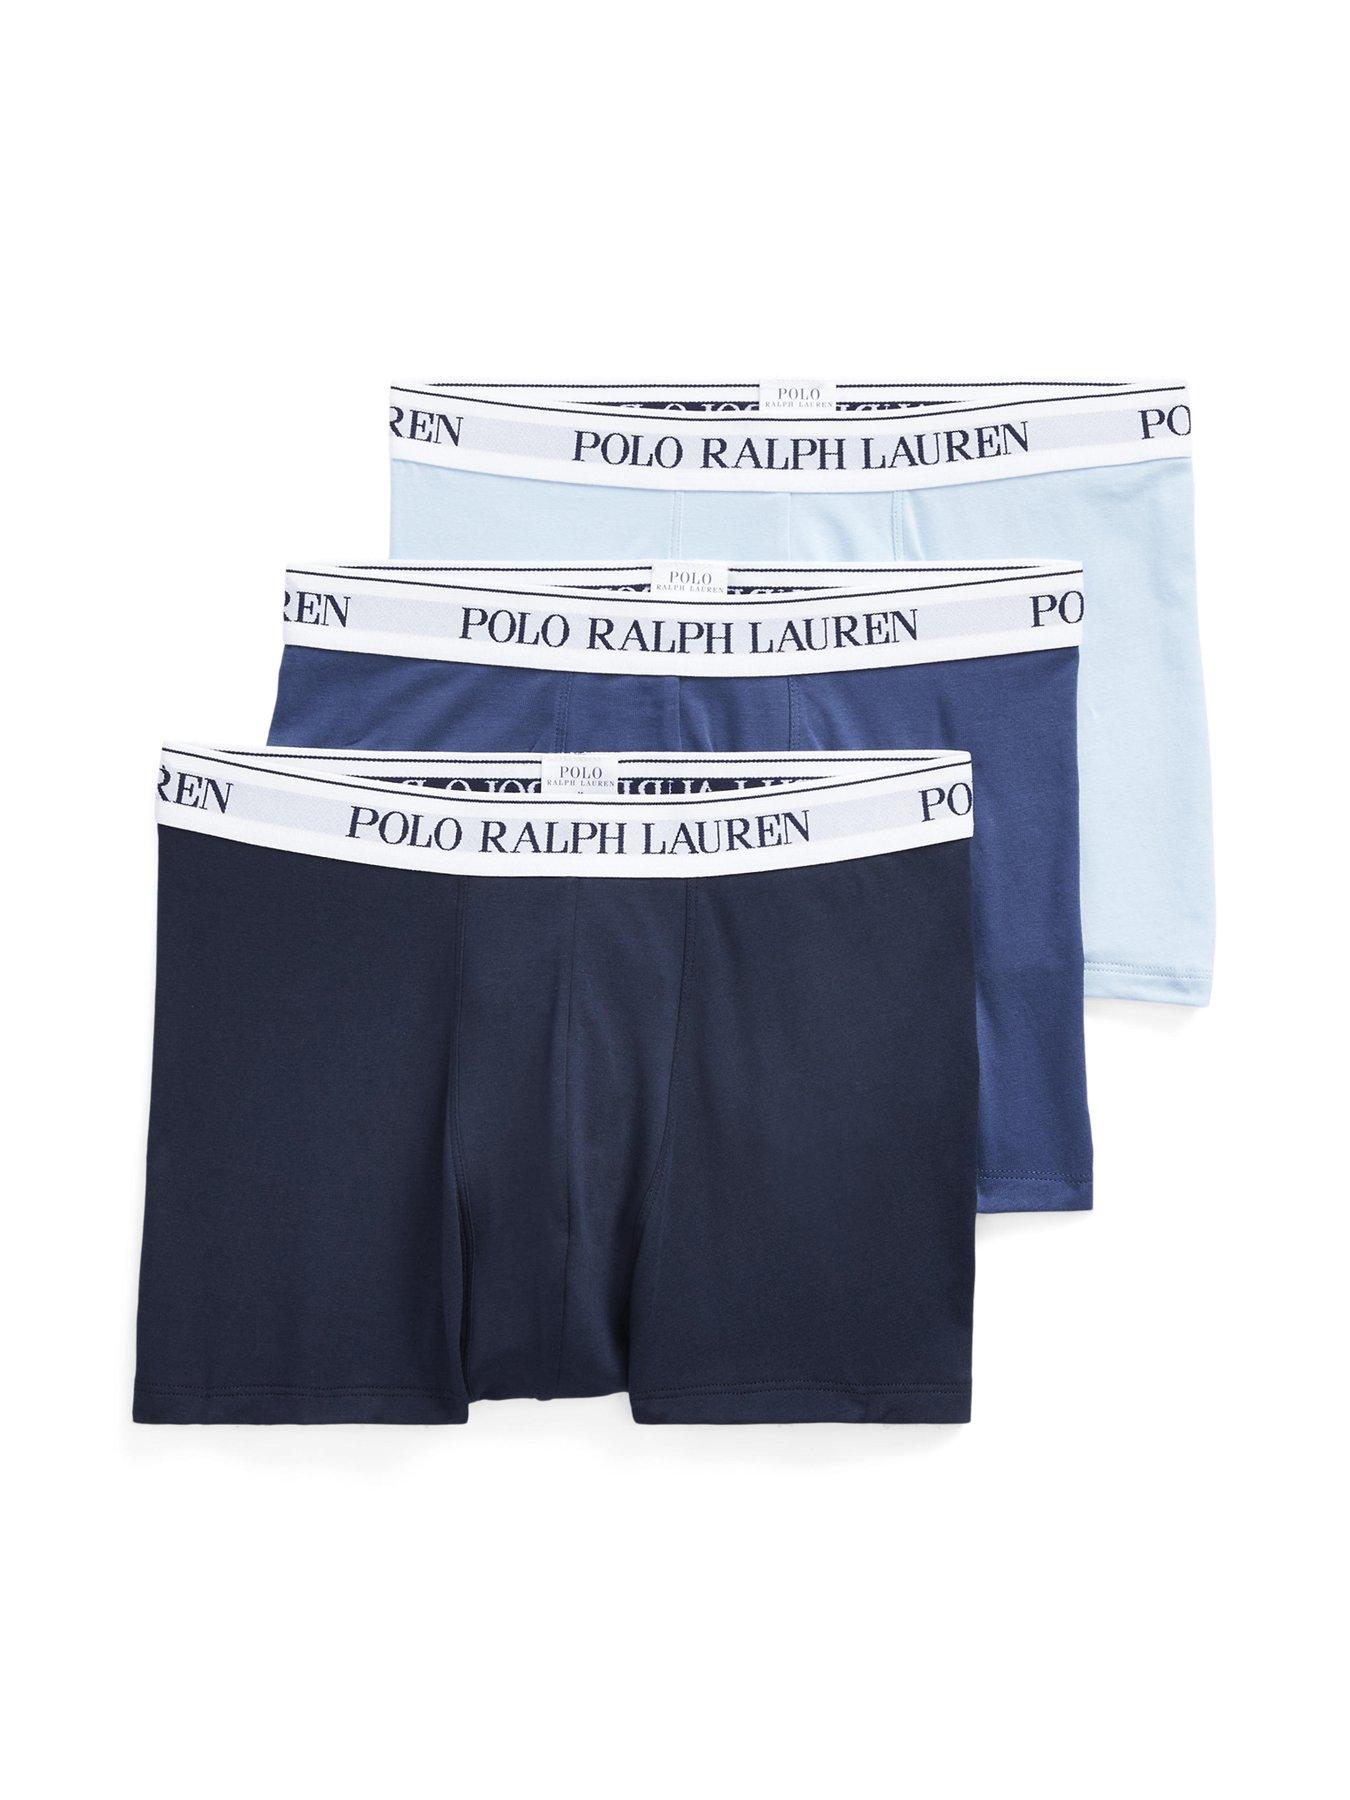 Polo RALPH LAUREN Men's Underwear Boxer Brief Sky Blue Striped